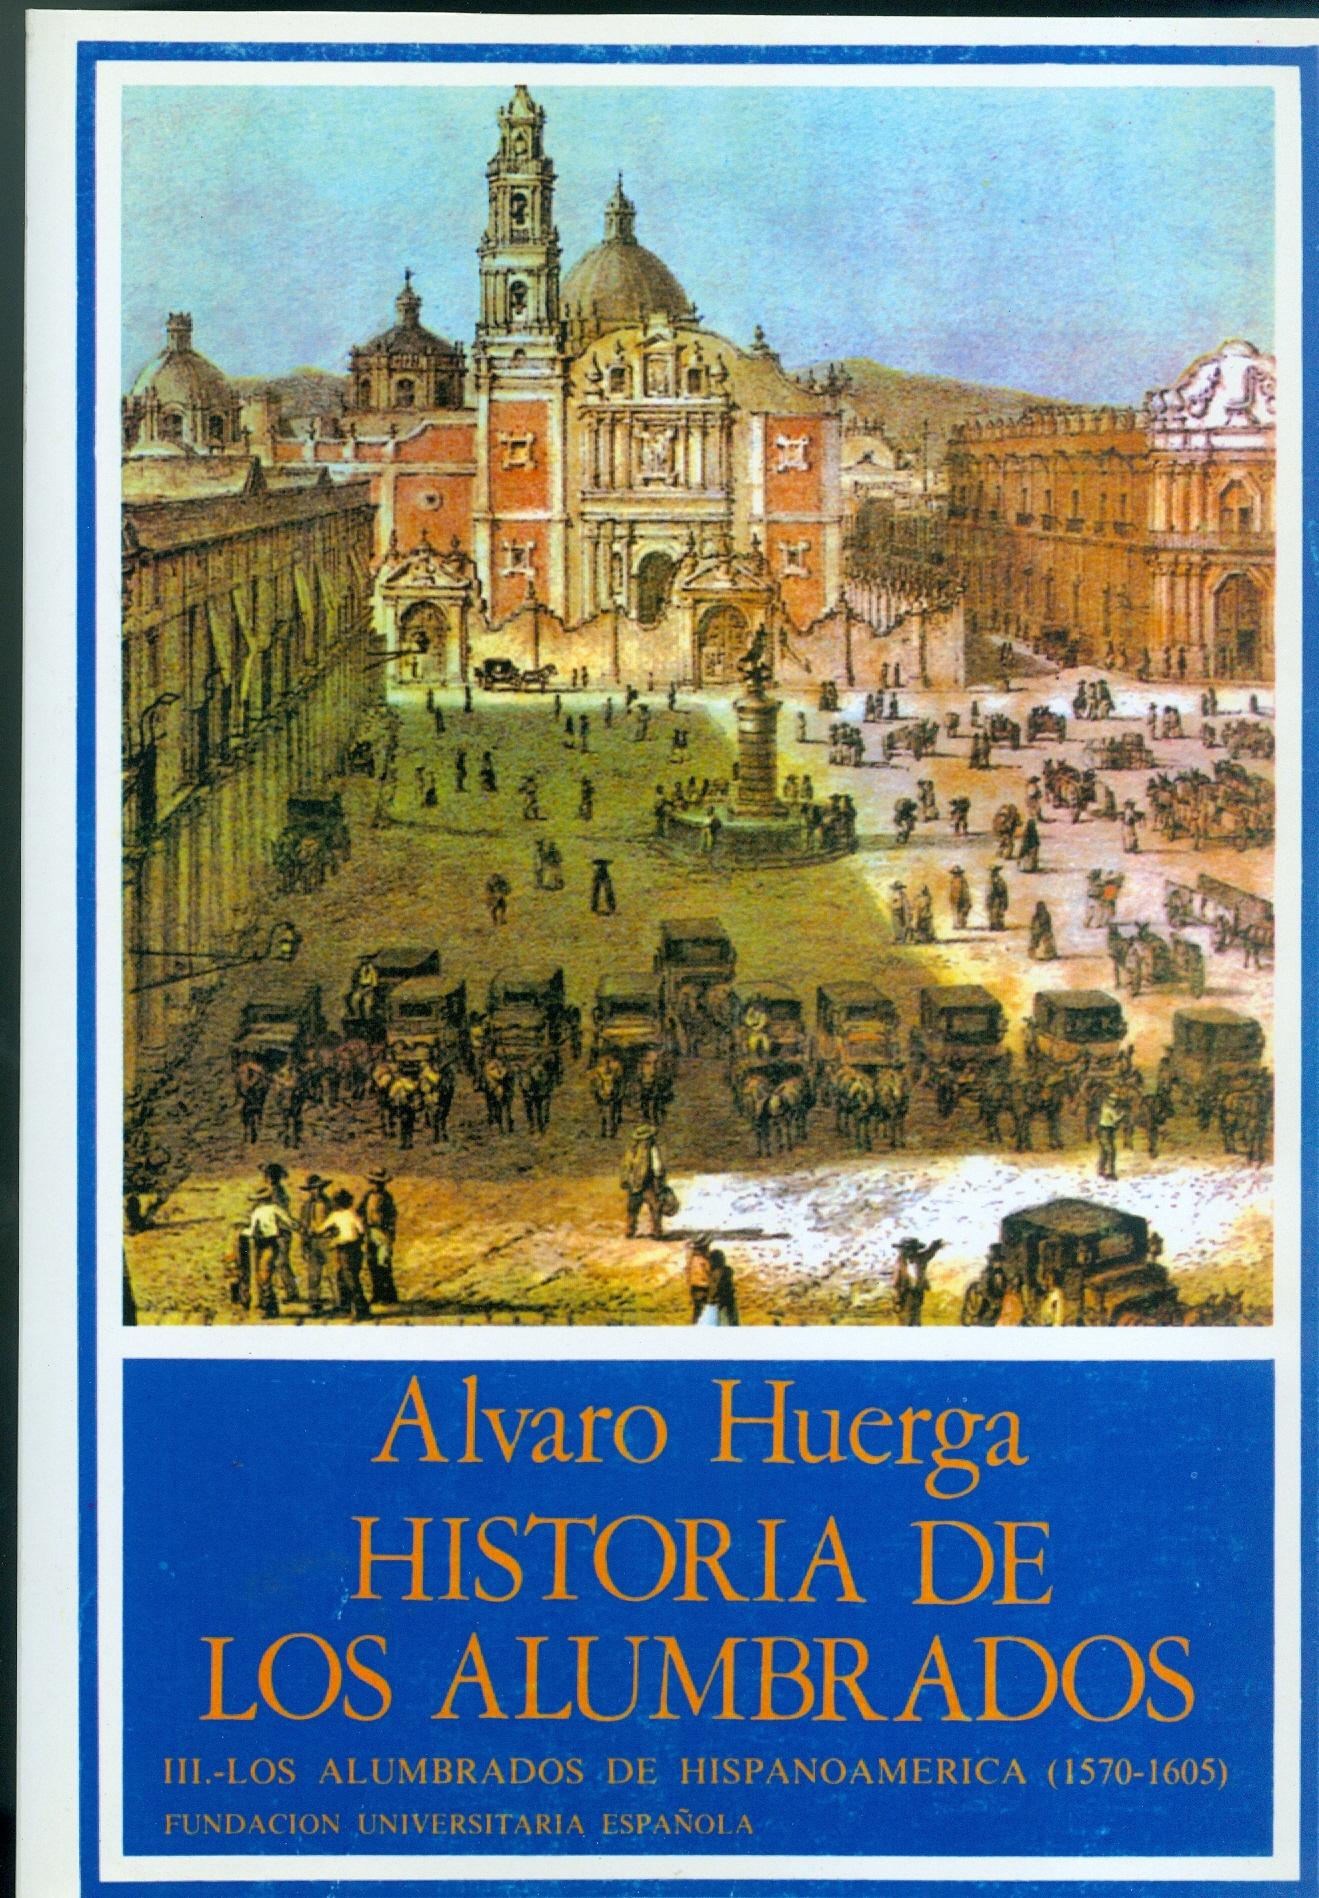 Historia de los alumbrados. 1570-1630